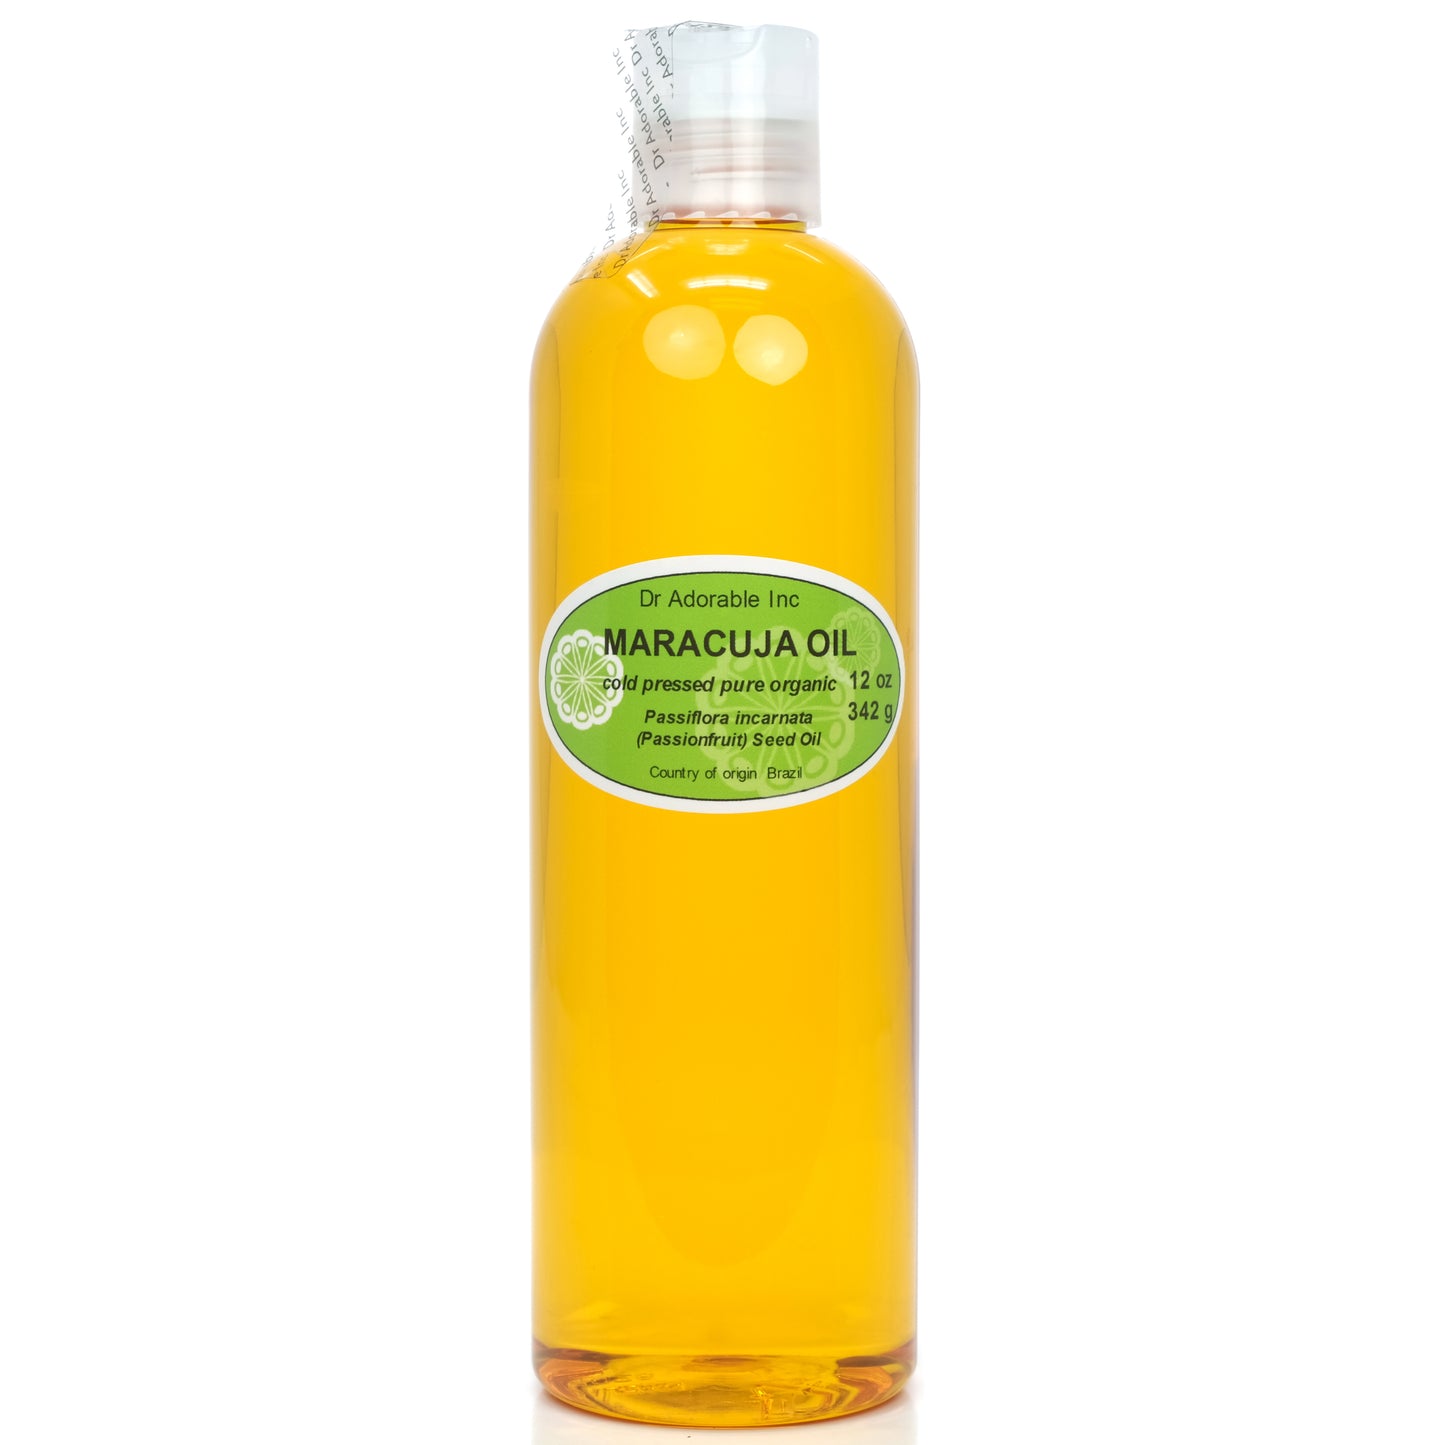 Maracuja (Passionfruit) Oil - 100% Pure Natural Premium Organic Cold Pressed